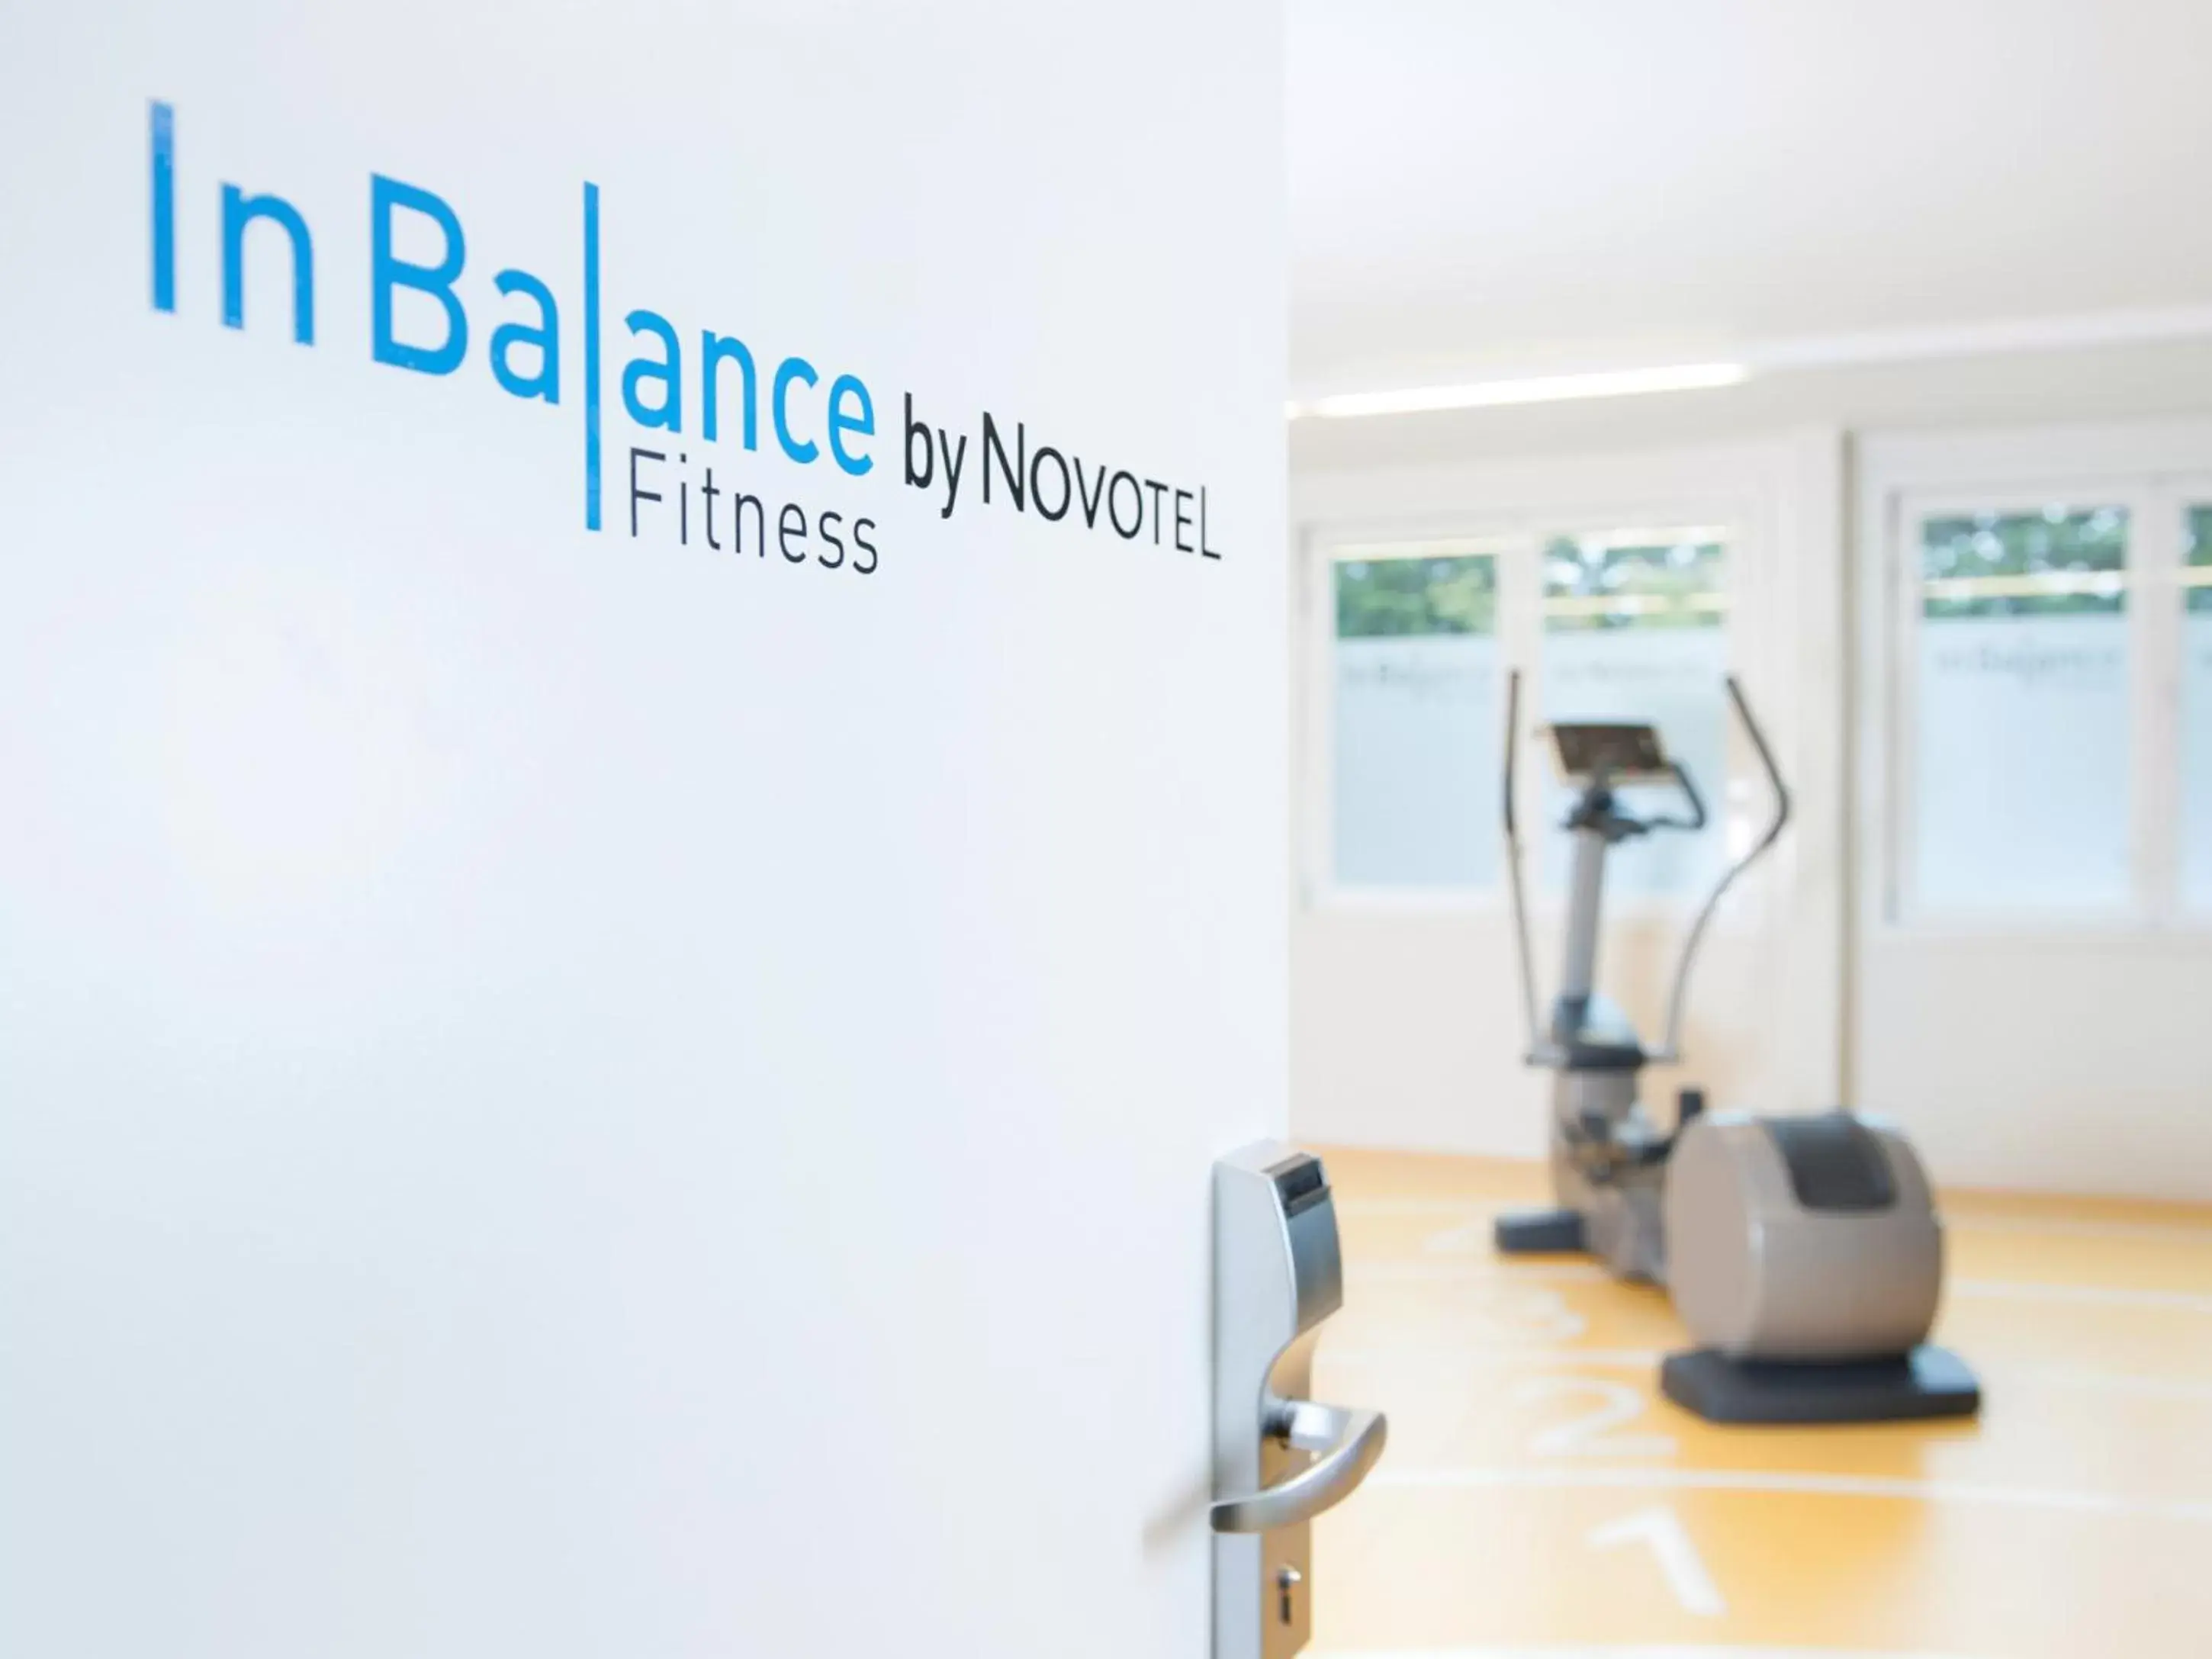 Fitness centre/facilities in Novotel Antwerpen